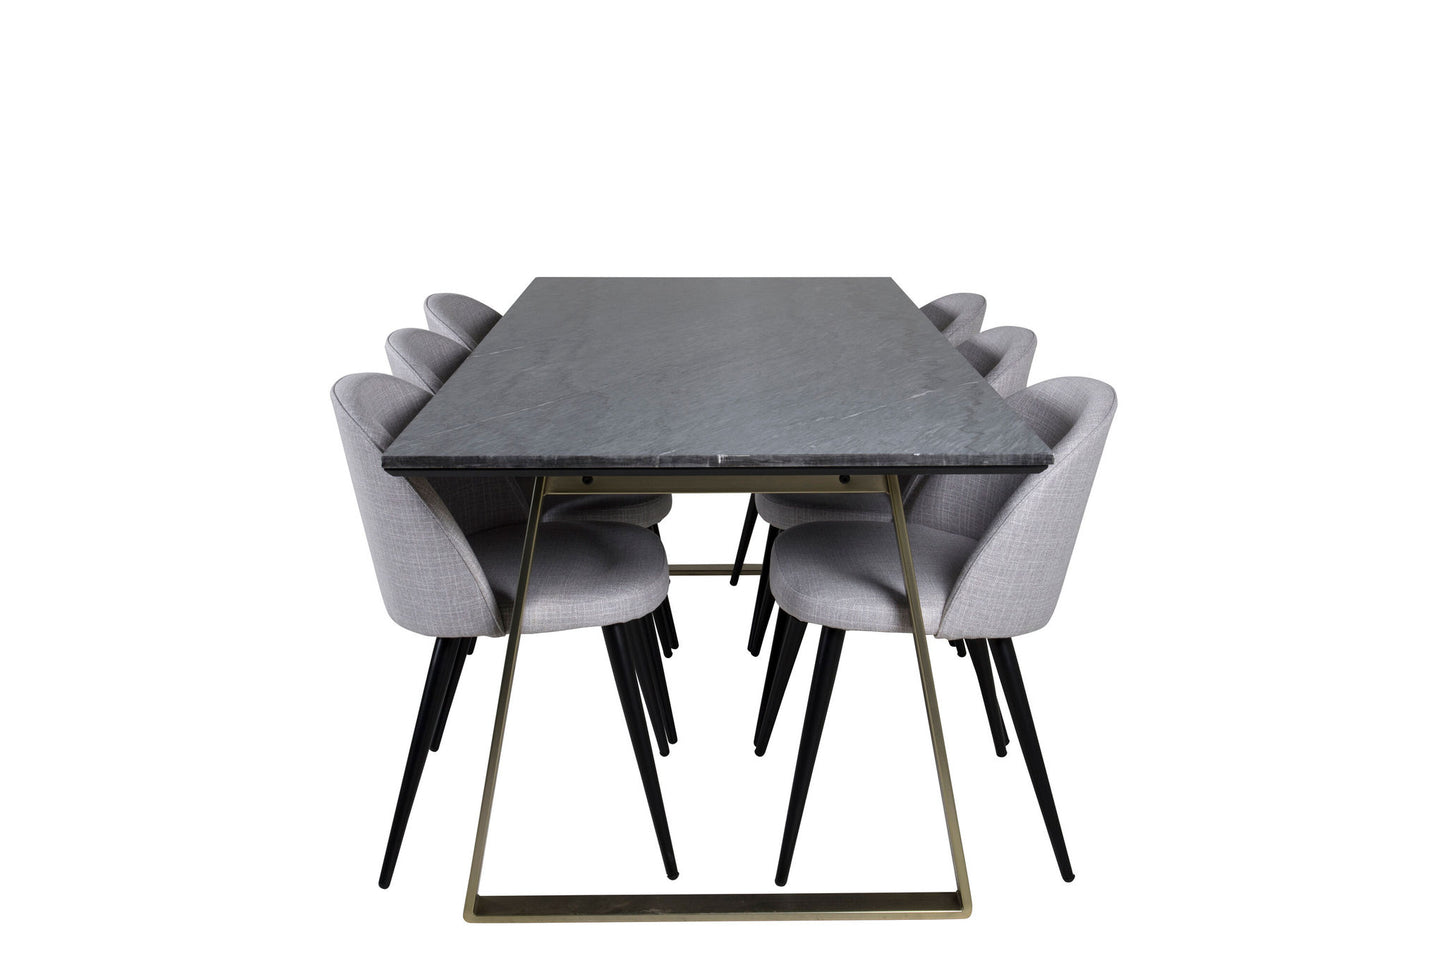 Estelle - Spisebord, 200*90*H76 - Grå / Messing+ velour Stol - Sorte ben - LysegråStof